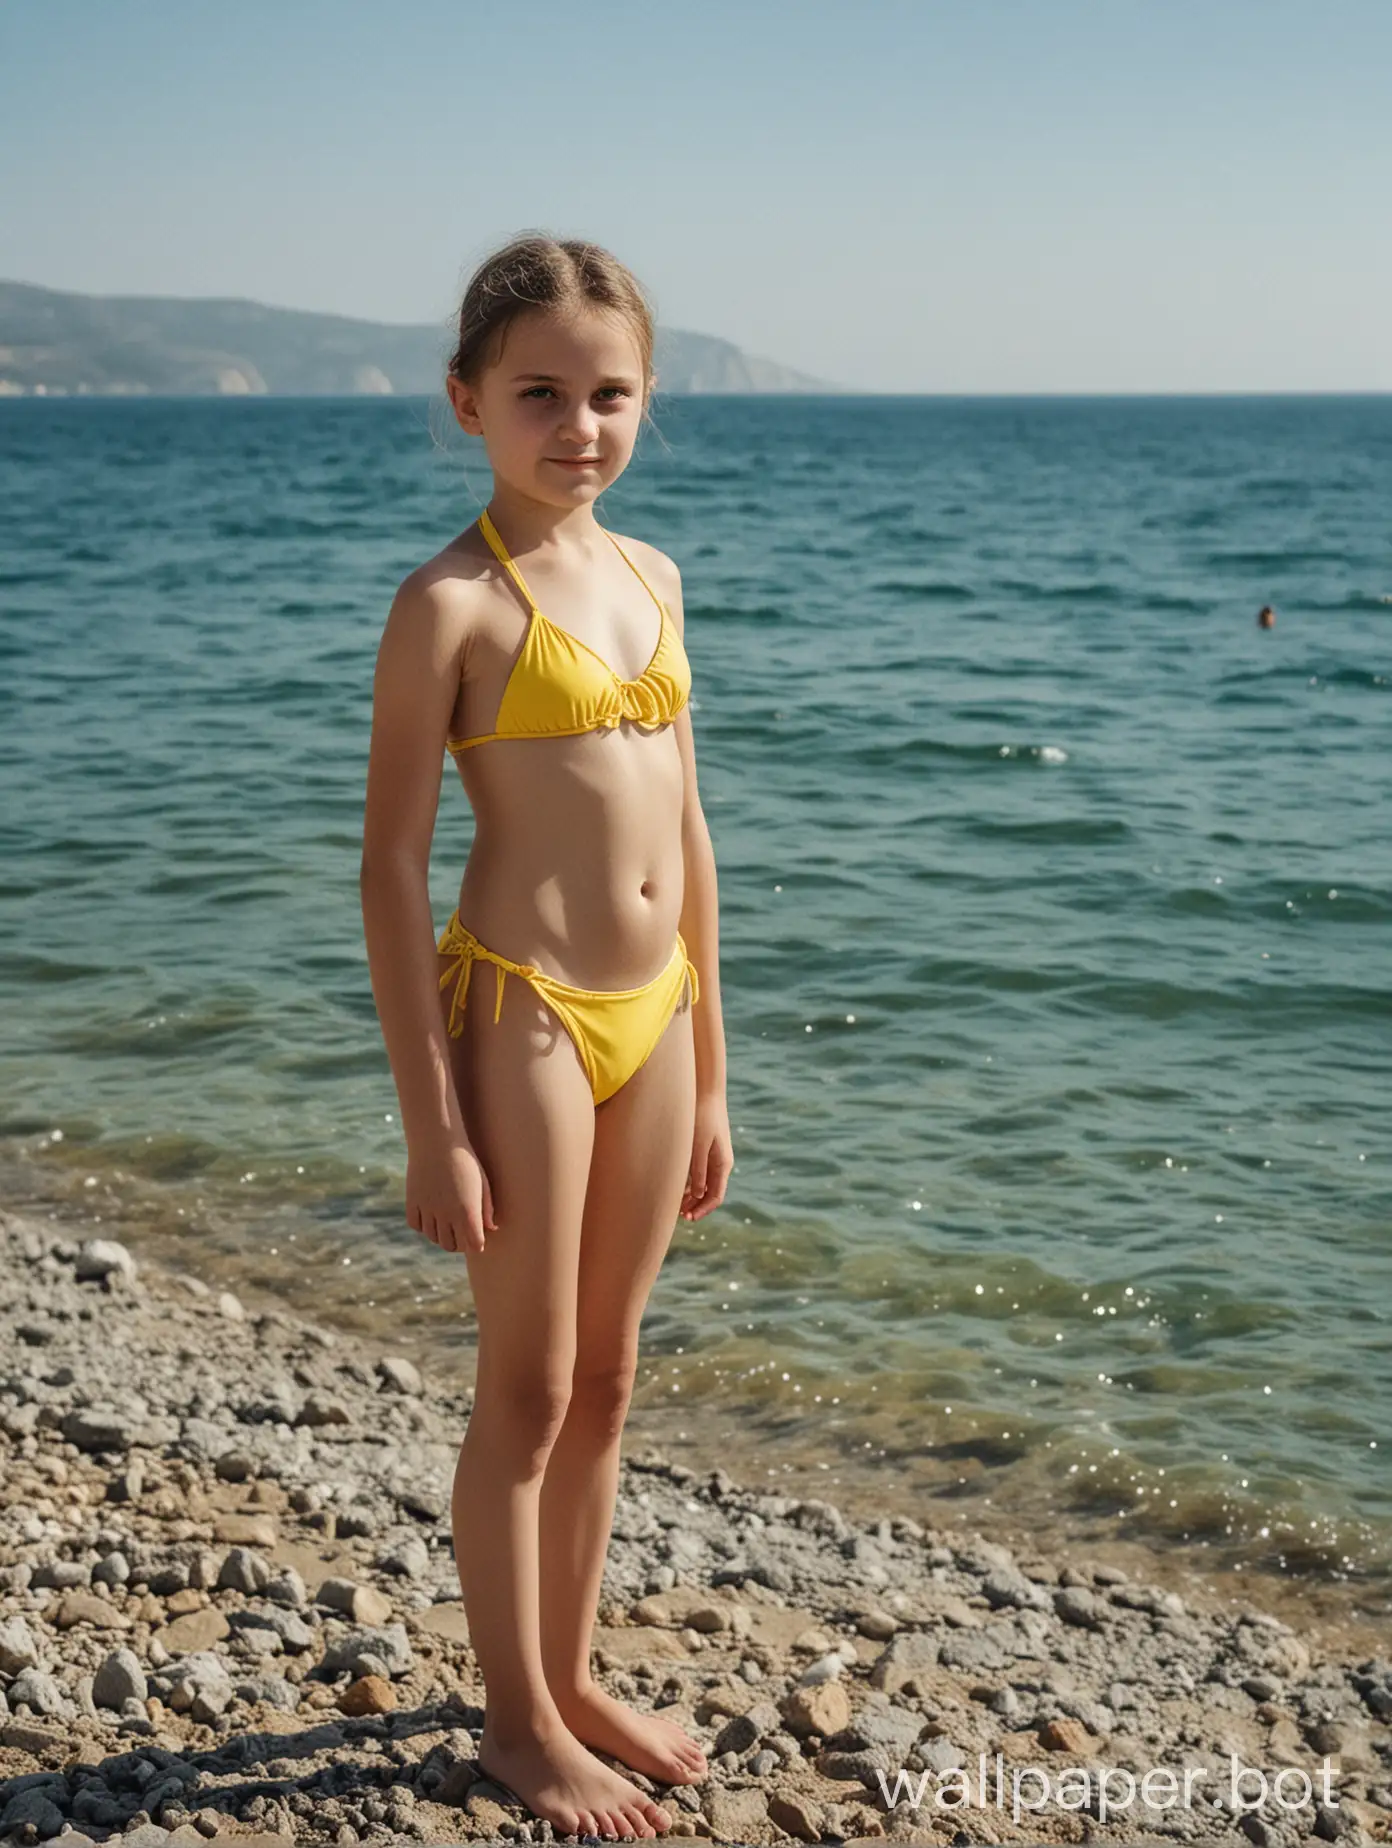 Крым, вид на море, девочка 12 лет в жёлтом купальнике, в полный рост, бикини